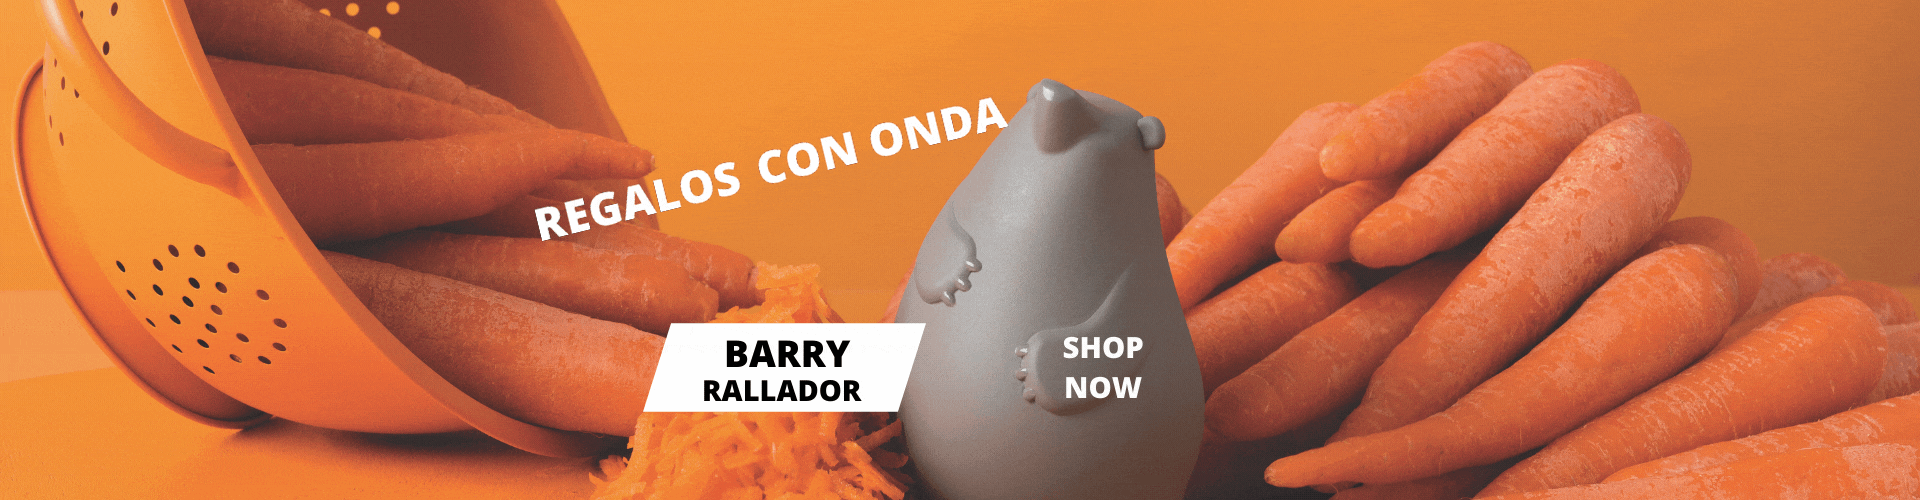 REGALOS CON ONDA BARRY